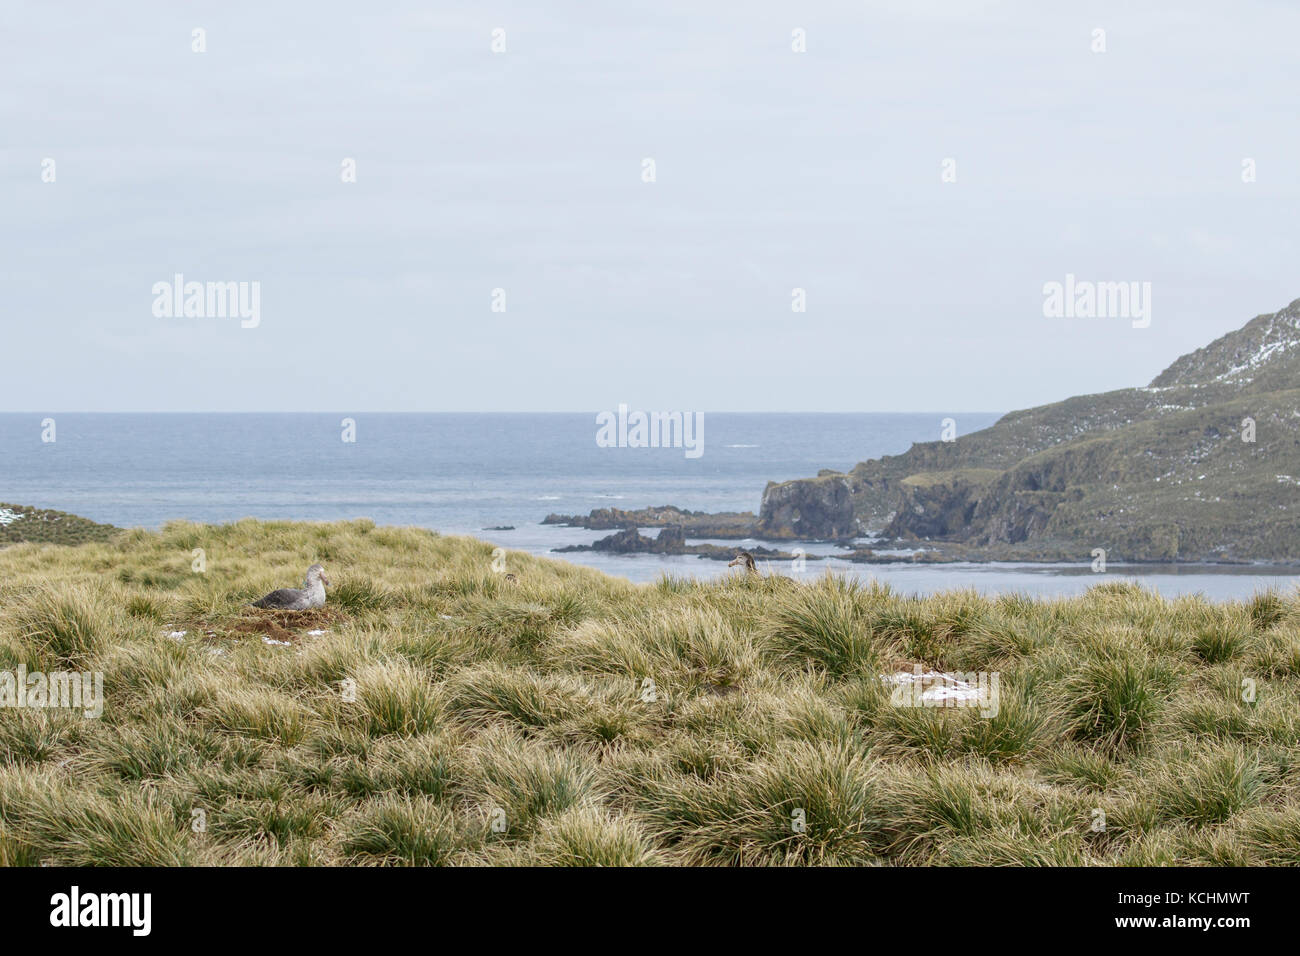 Le pétrel (Macronectes halli) nichant sur tussock grass sur l'île de Géorgie du Sud. Banque D'Images